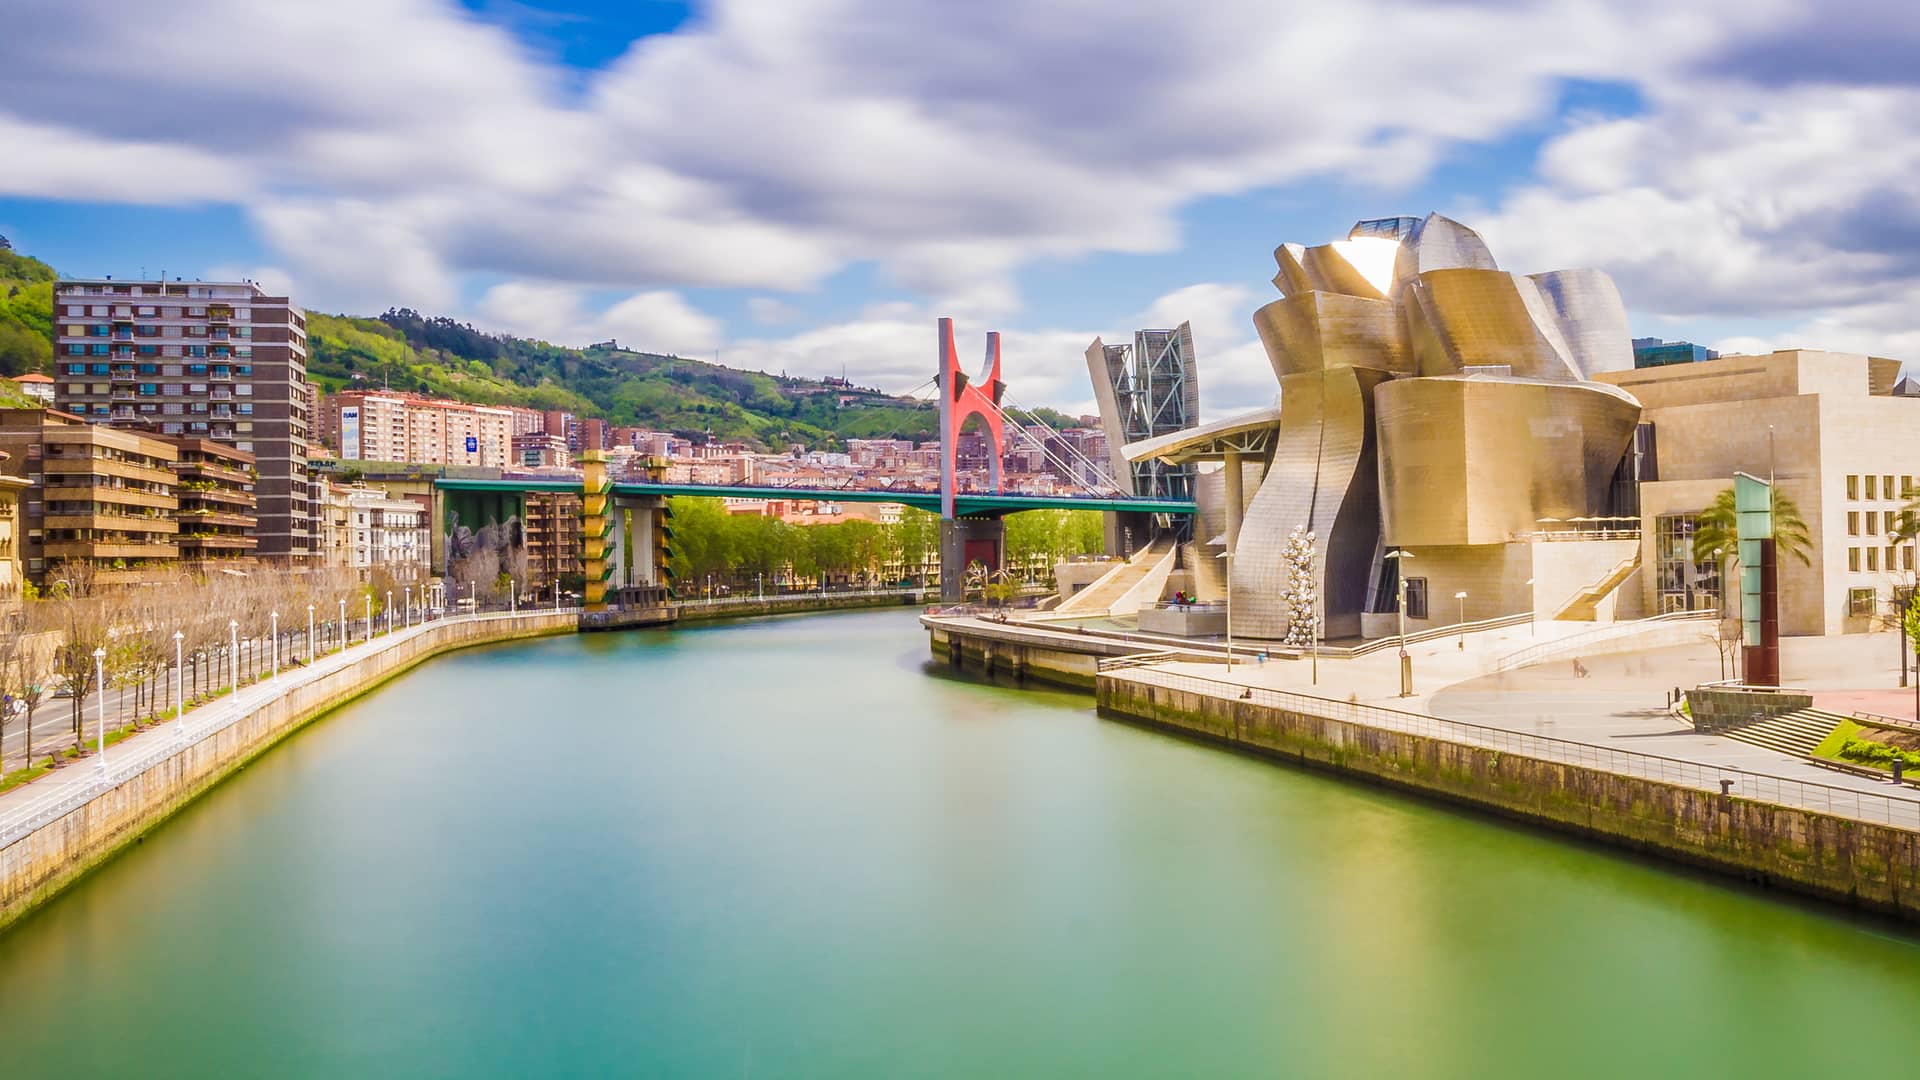 ▷ Guuk en Bilbao: cobertura, tiendas y tarifas disponibles